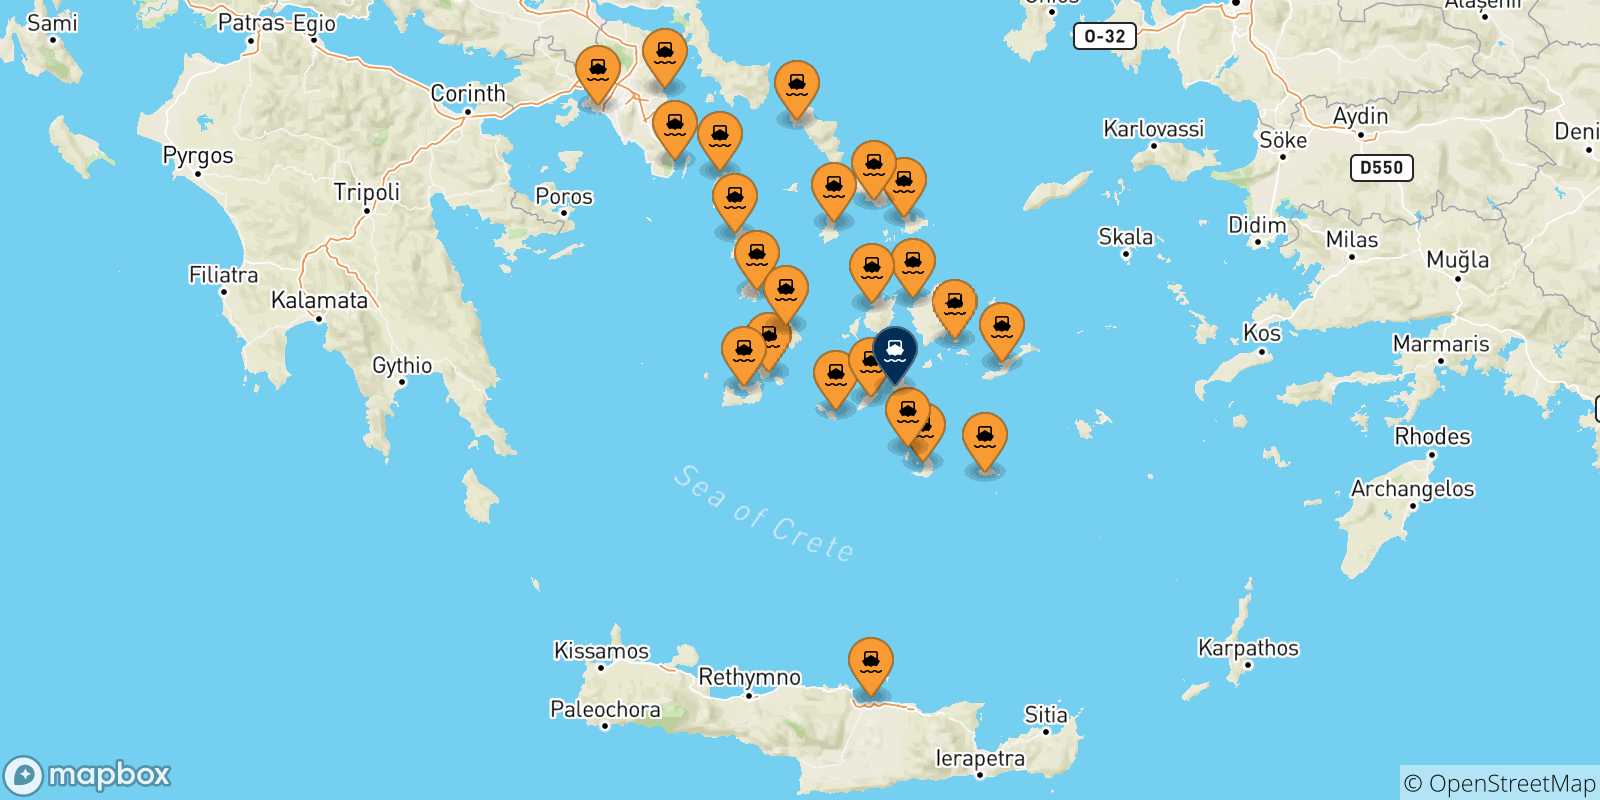 Mappa delle possibili rotte tra la Grecia e Ios